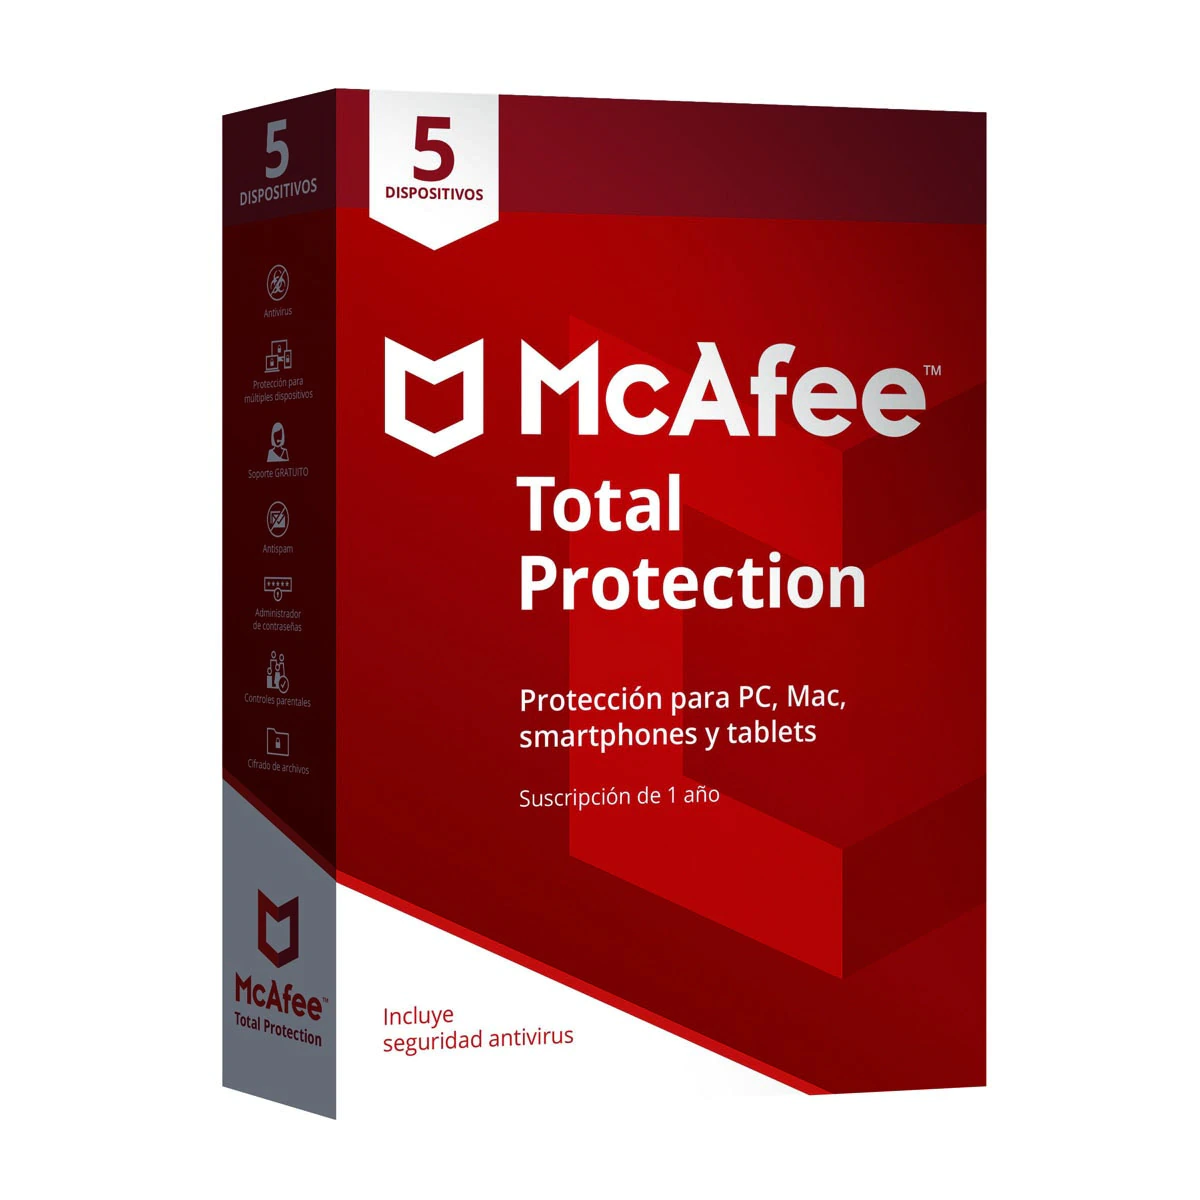 McAfee Total Protection 5 dispositivos / 1 año suscripción